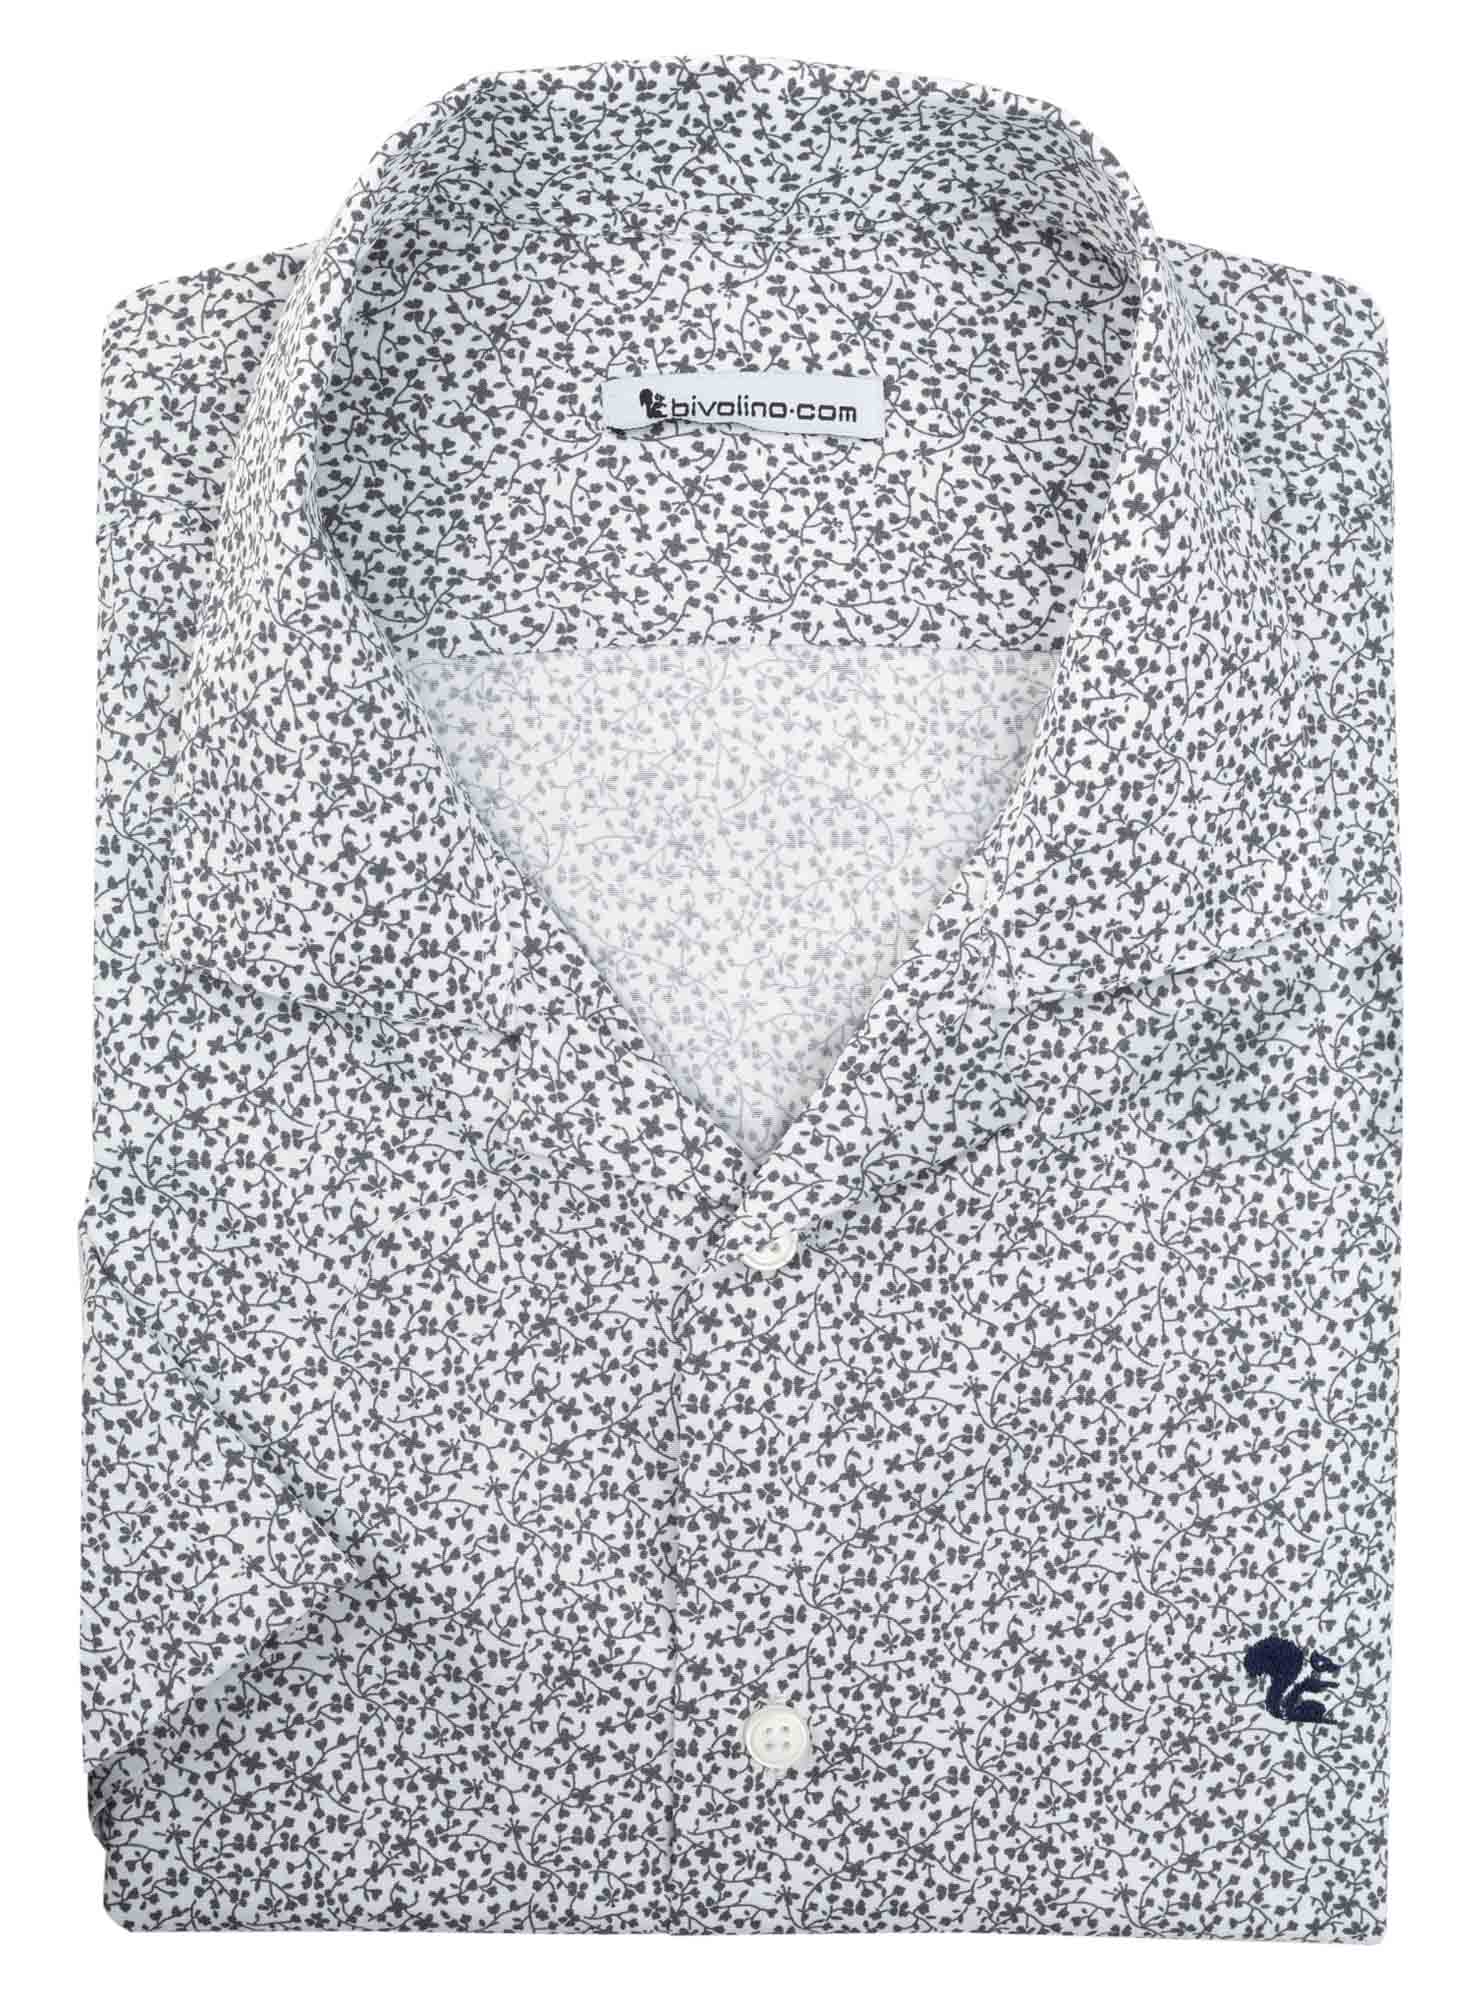 LIVORNO - stampa microdisegno millefiori in cotone blu camicia da uomo - MANIO 2